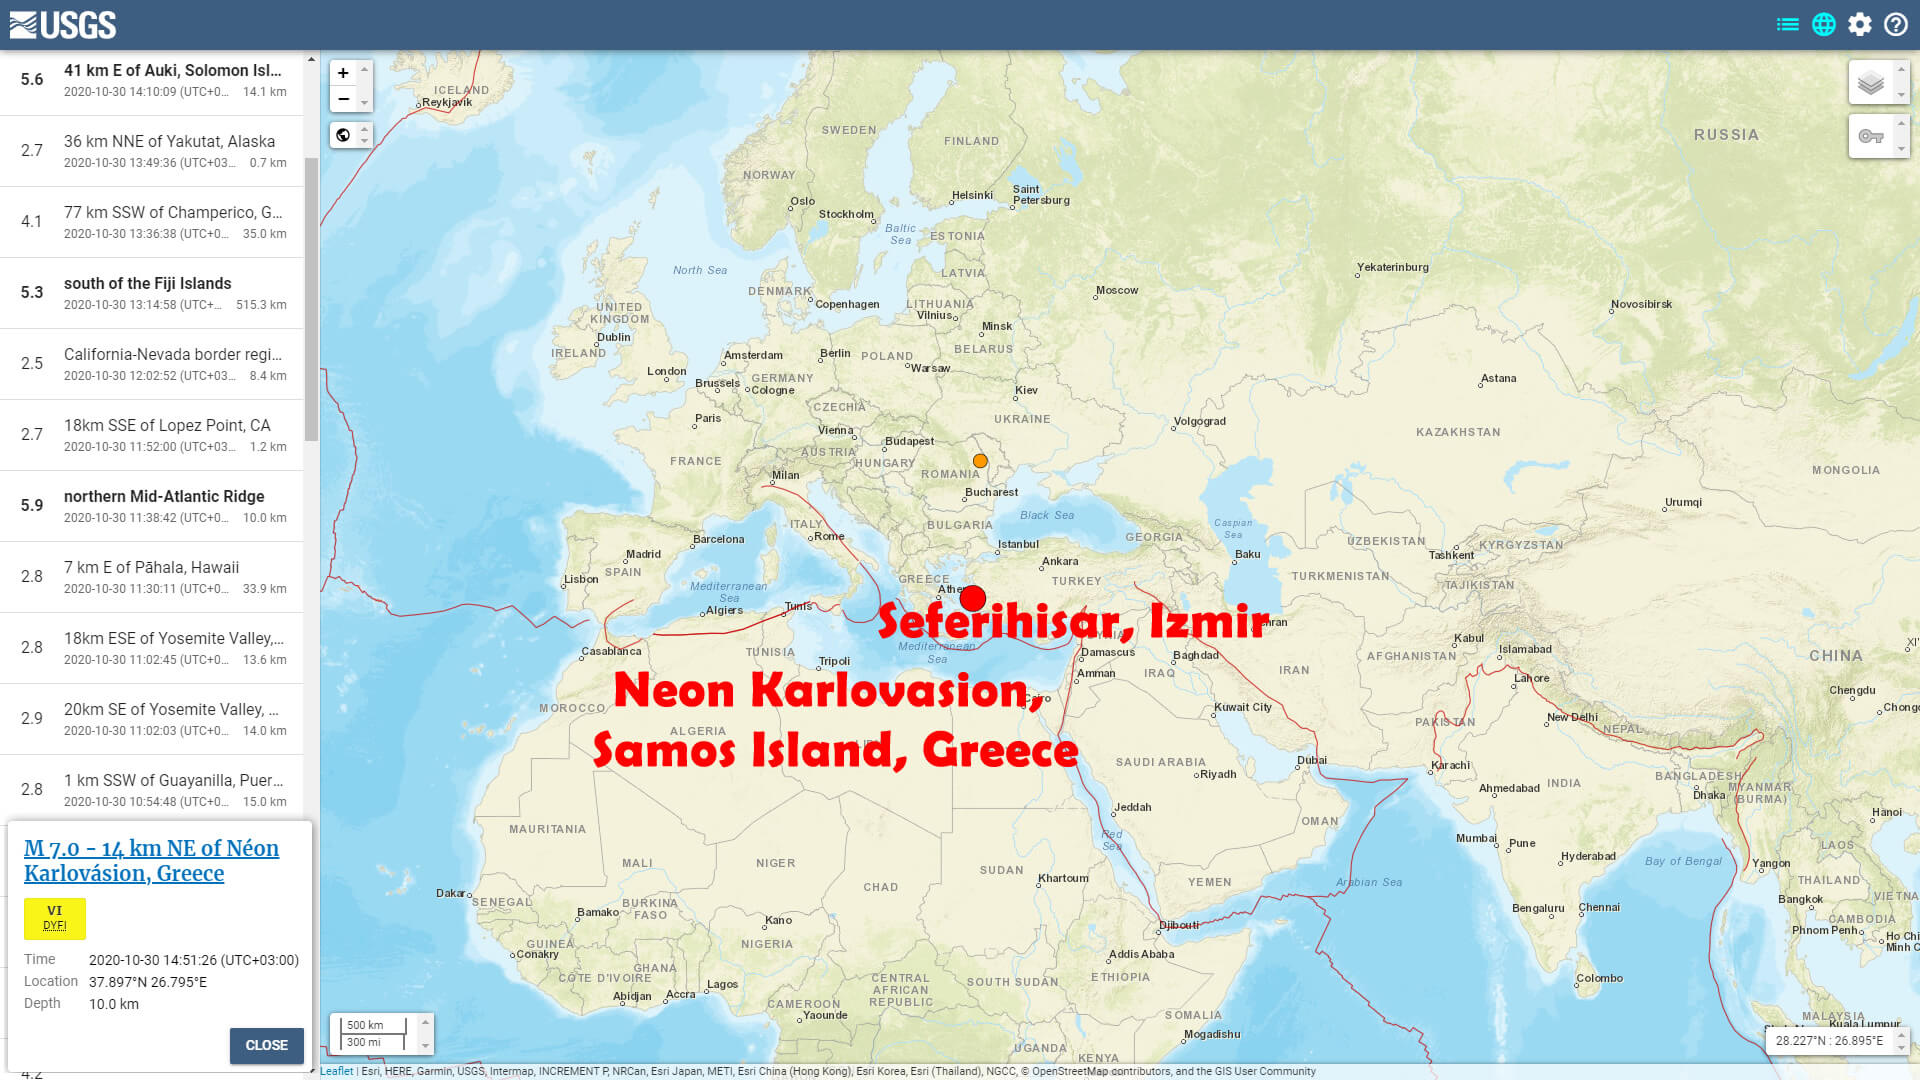 Samos Greece - Seferihisar Izmir - Sep 30 Earthquake USGS Map